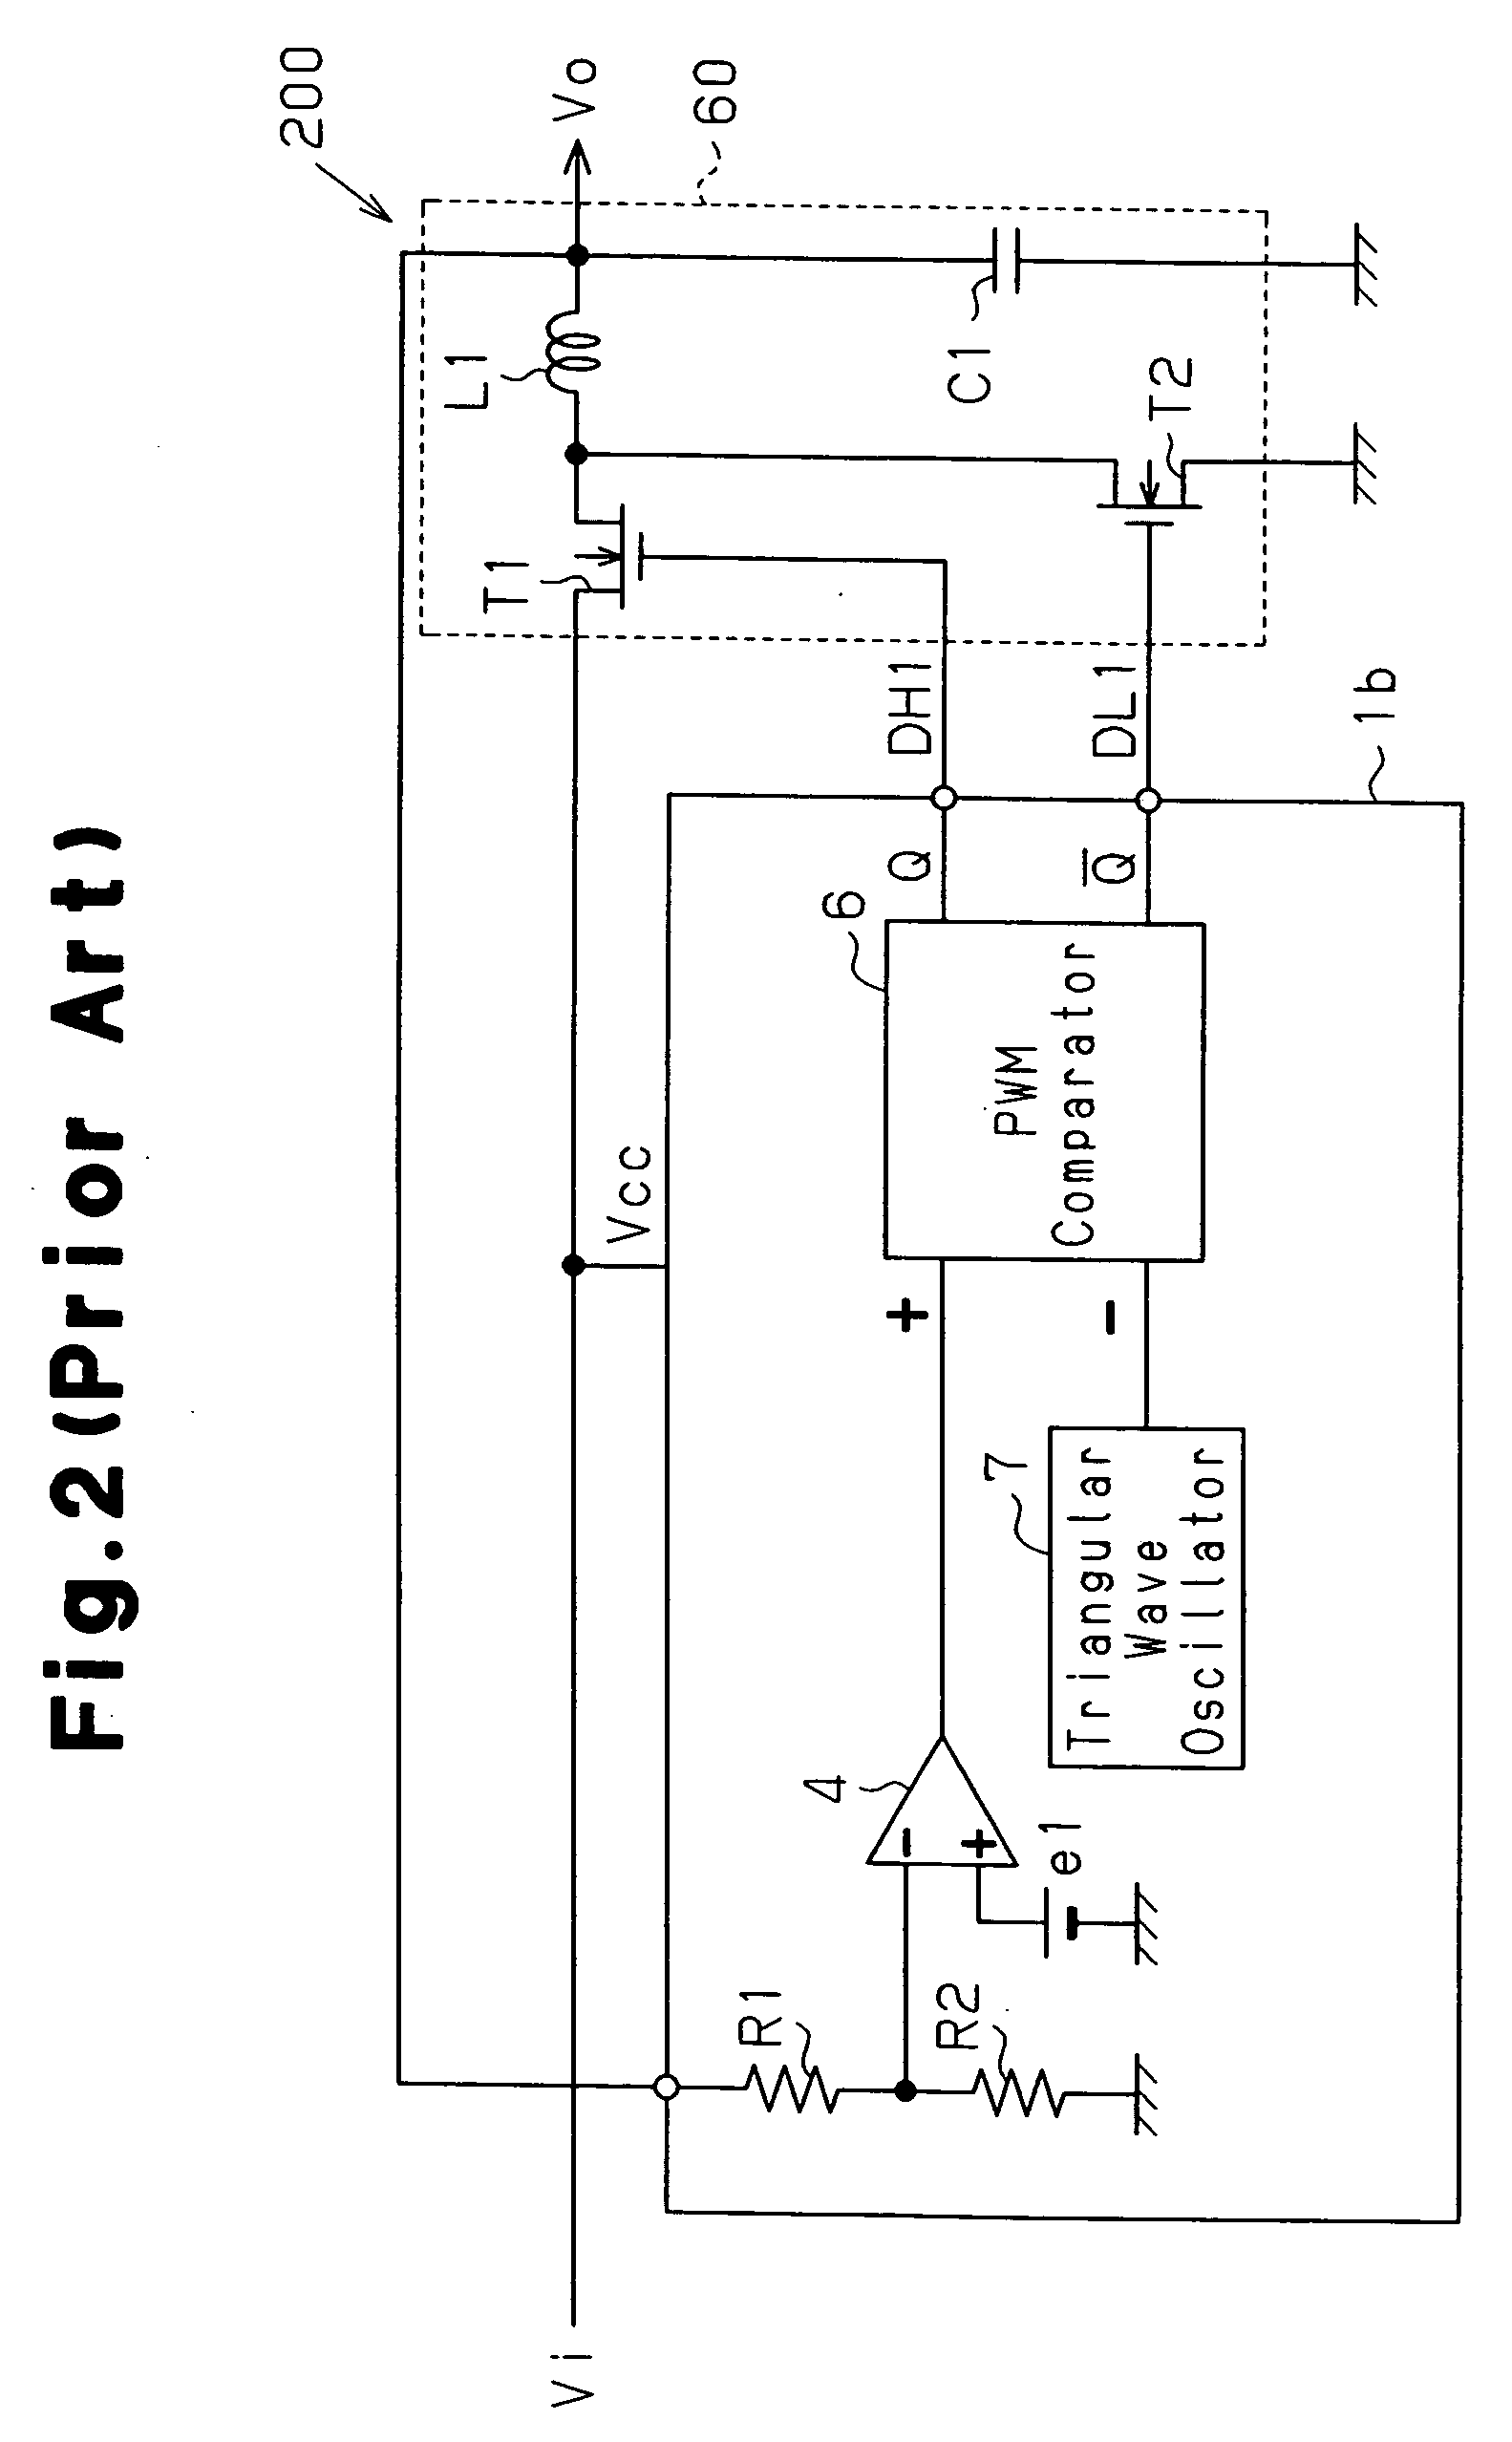 Multiphase DC-DC converter